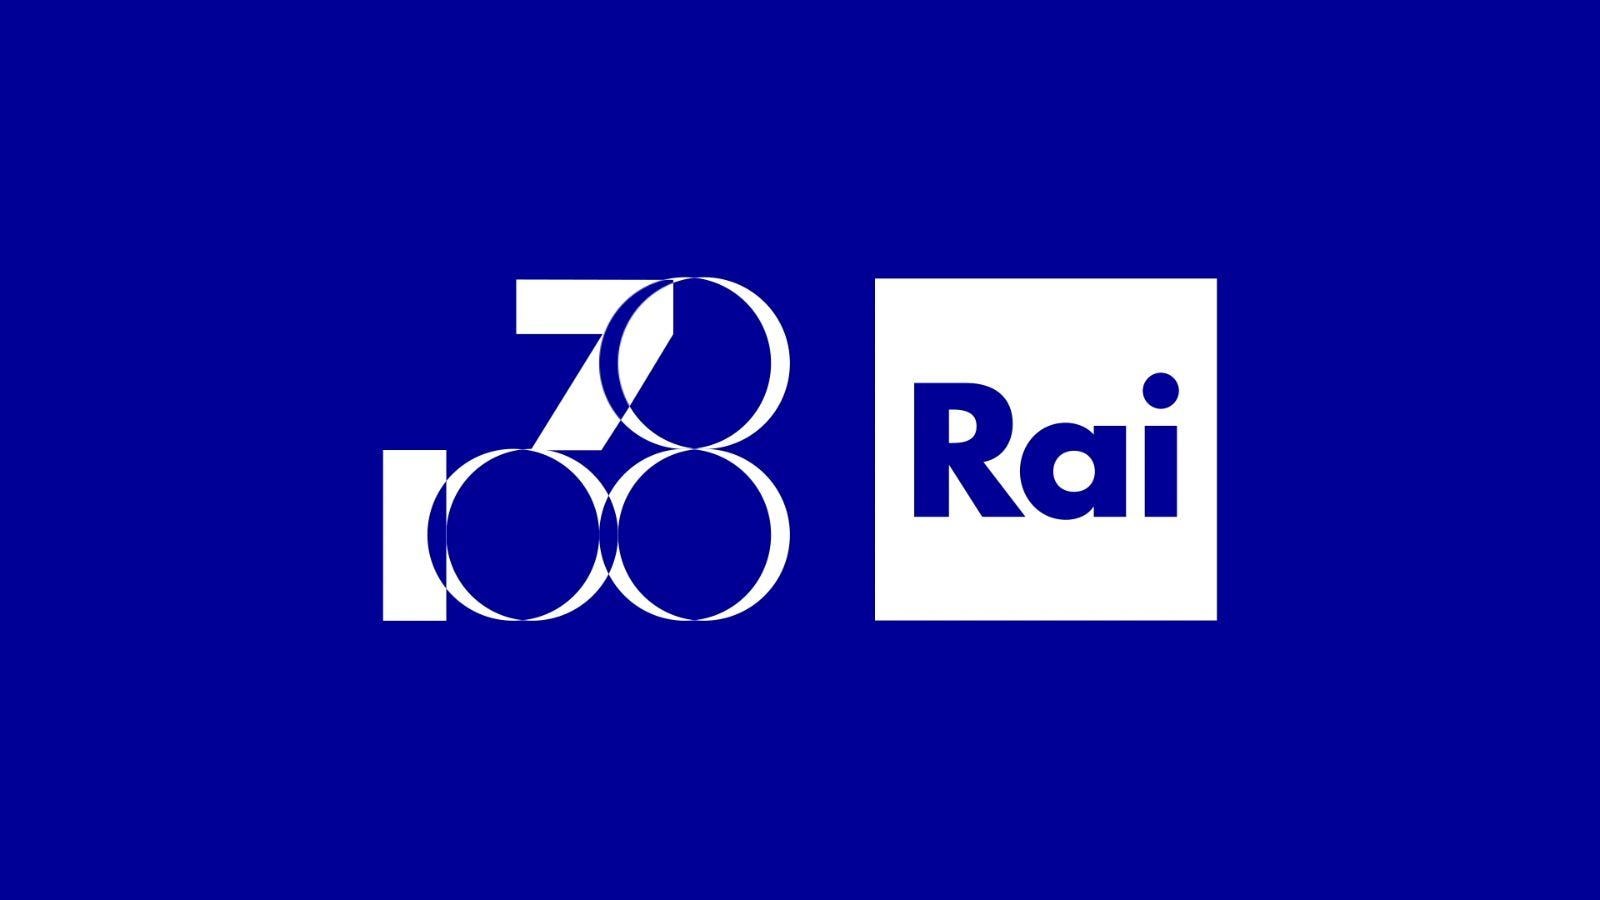 70 anni Rai. Soldi: transizione digitale e sostenibilità tra le sfide  future del servizio pubblico - RAI Ufficio Stampa